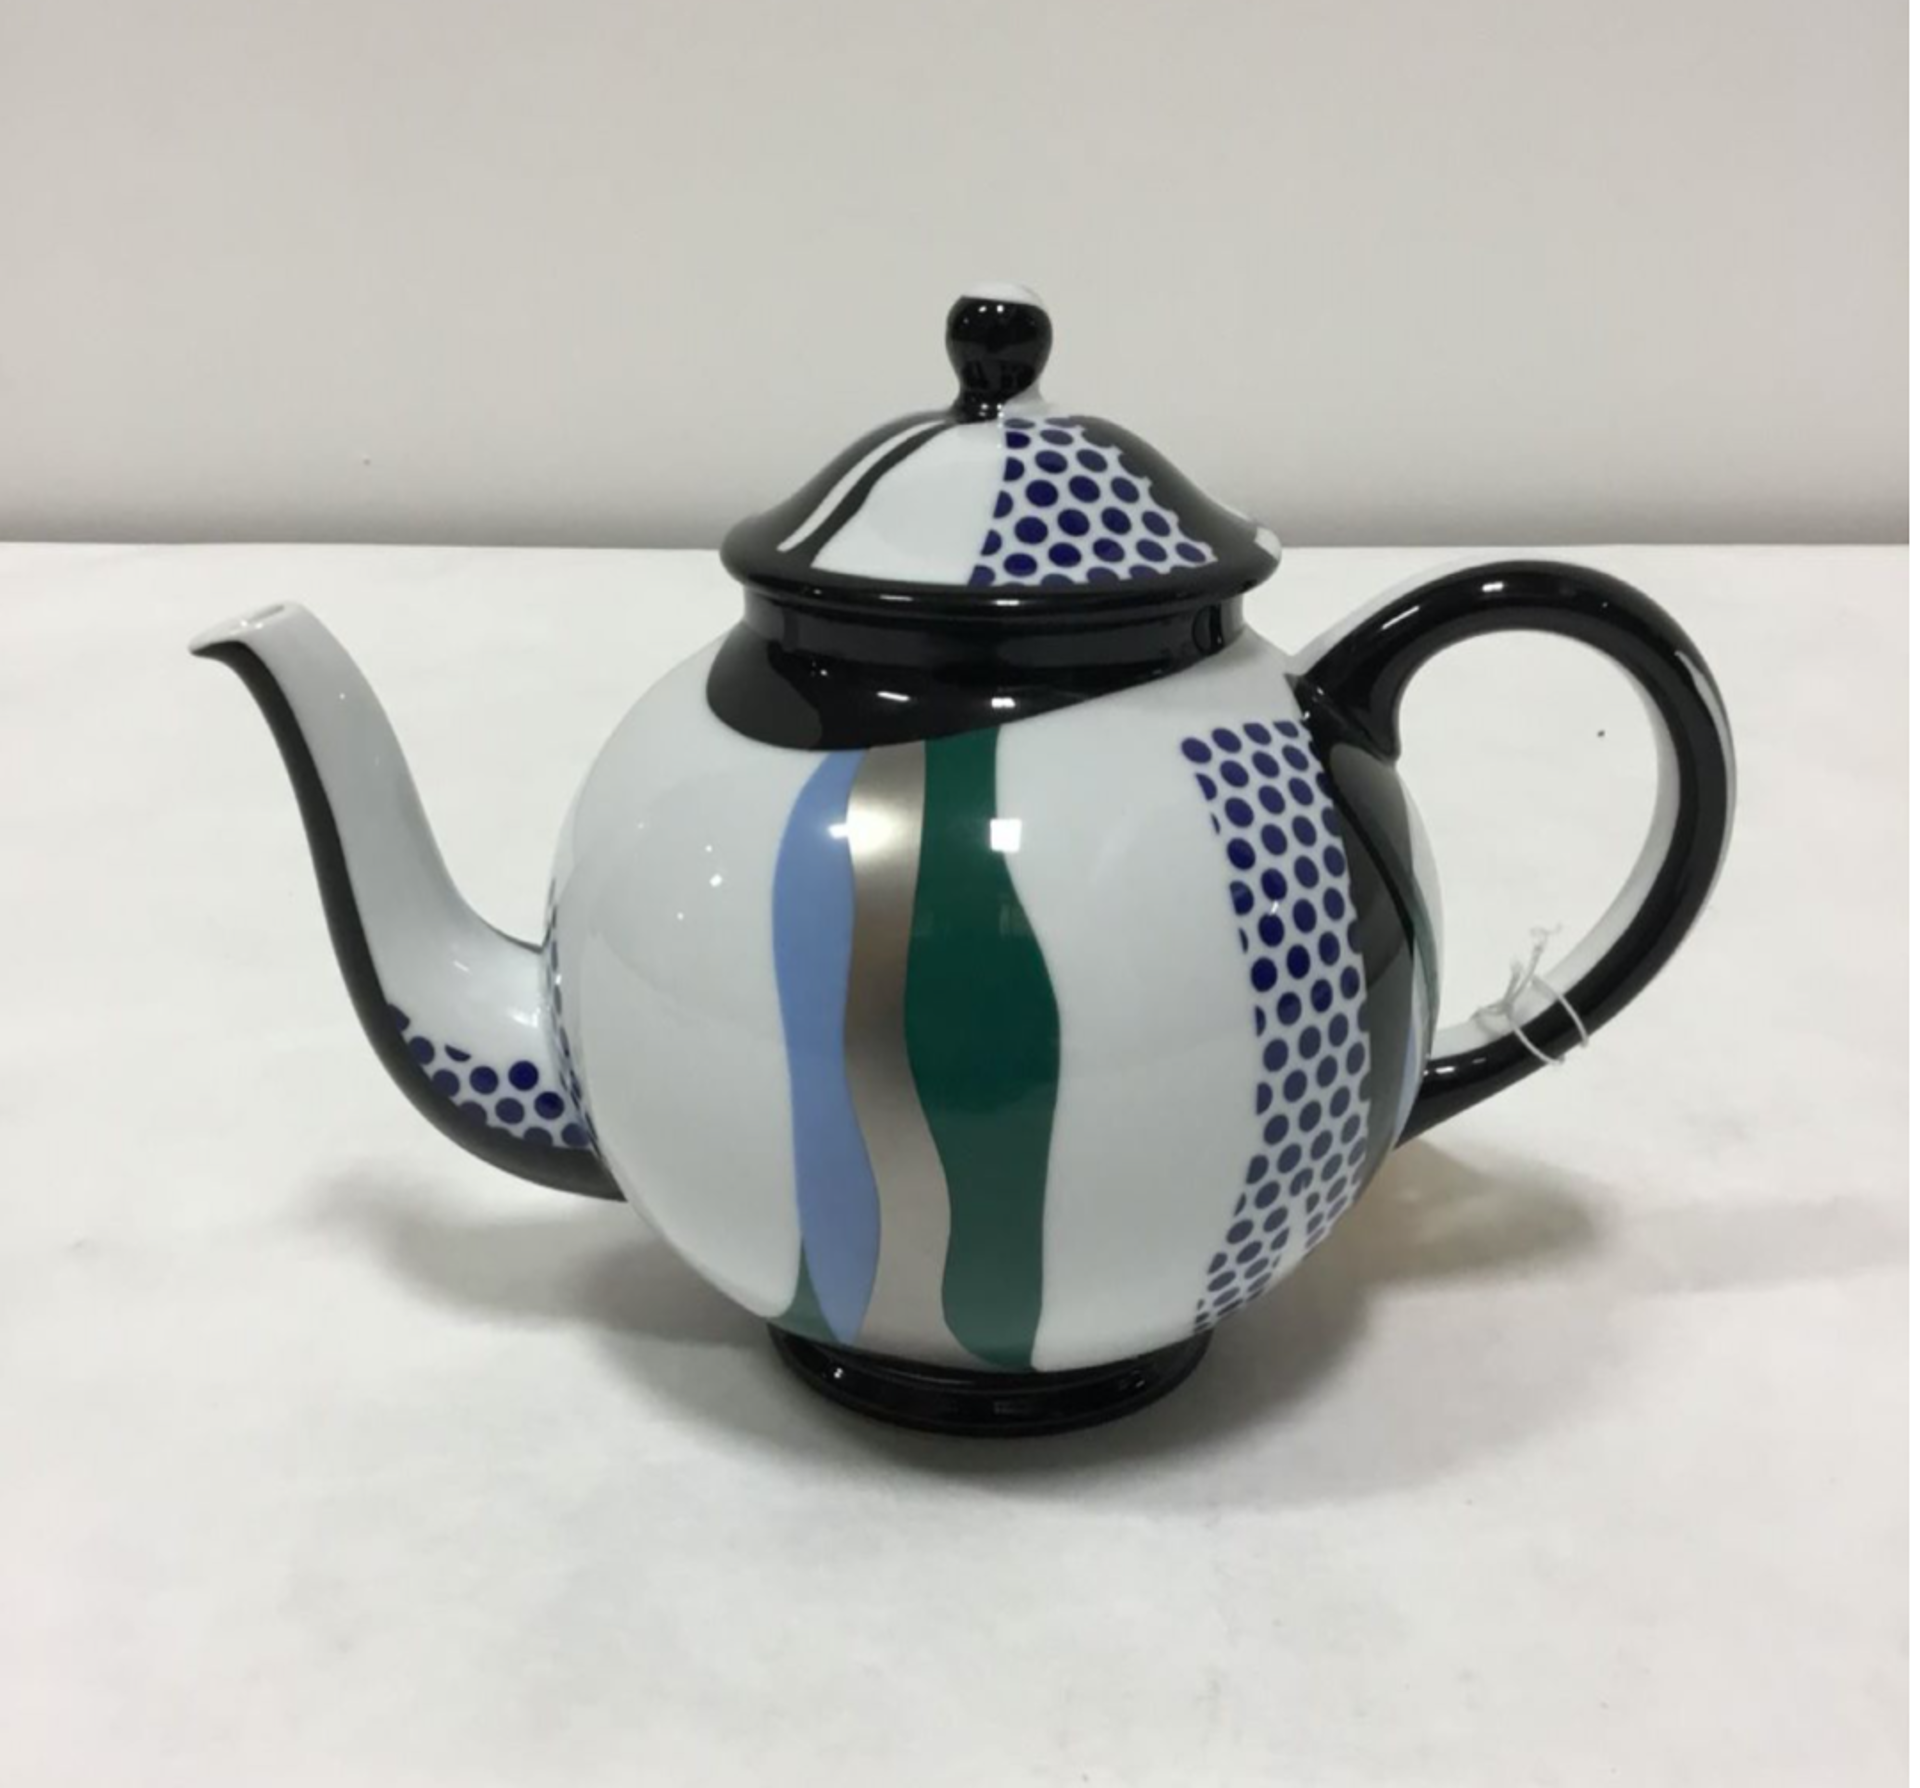 Tea Set (group of 6 works, ed. 100) by Roy Lichtenstein